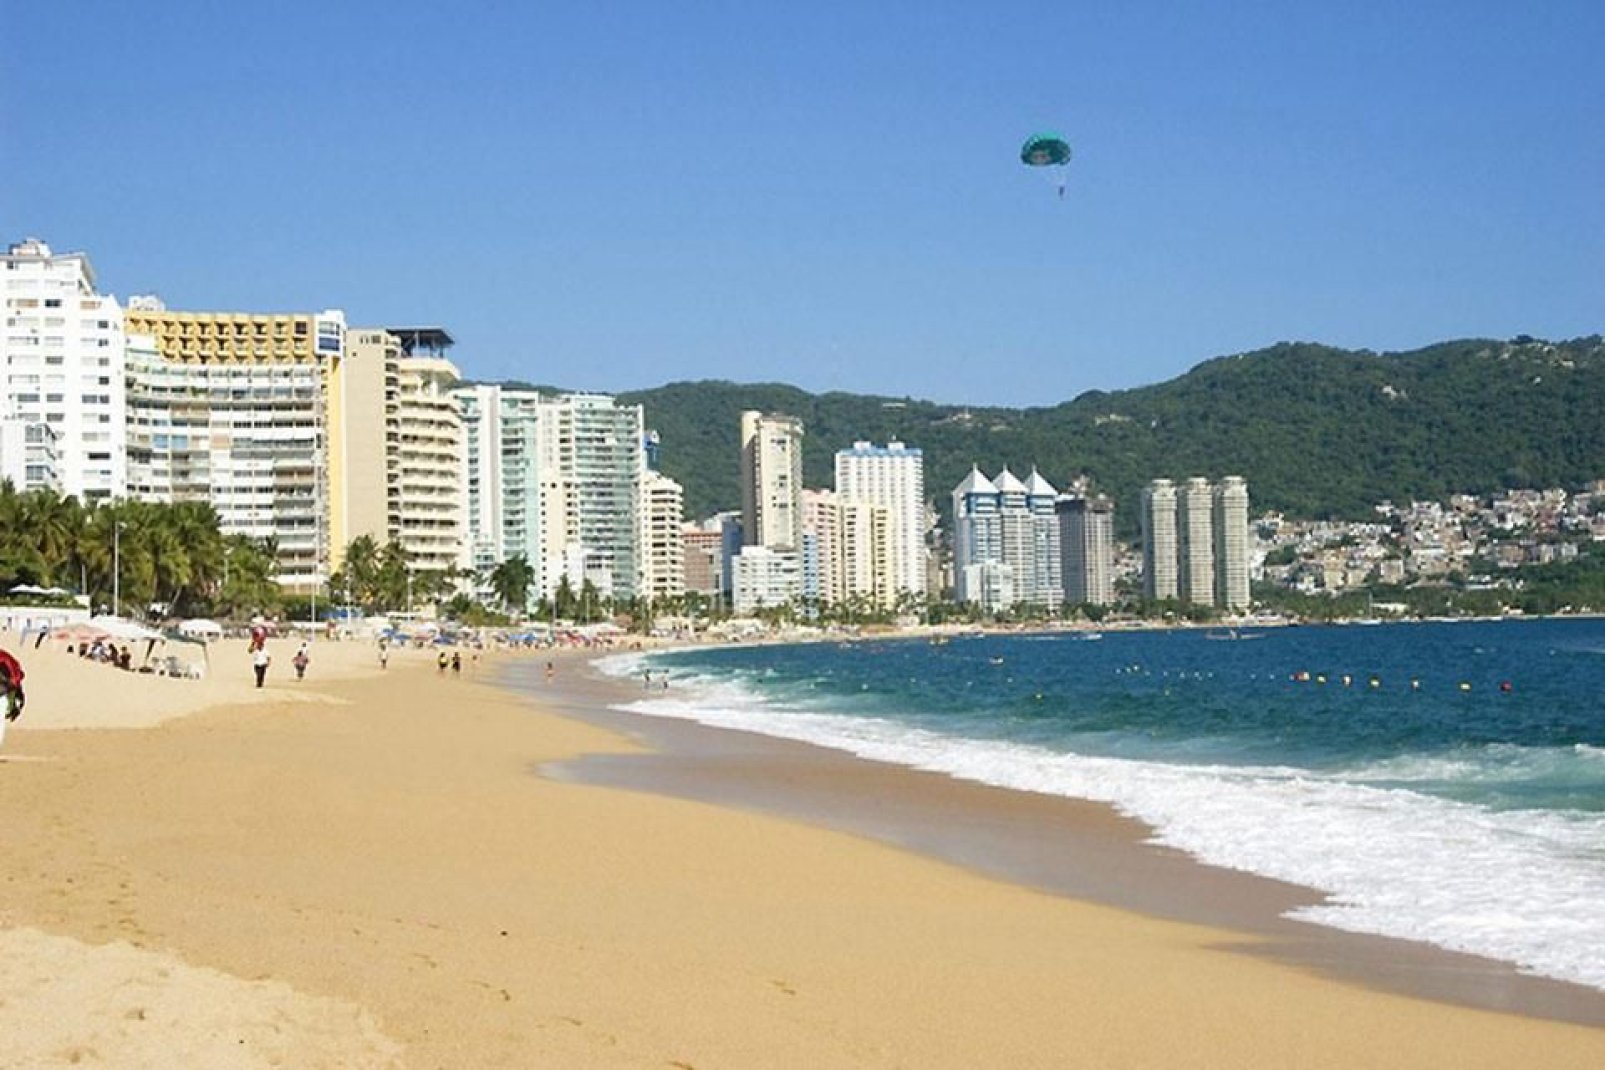 Acapulco est une importante destination de vacances, même si le nombre de touristes a diminué ces dernières années.